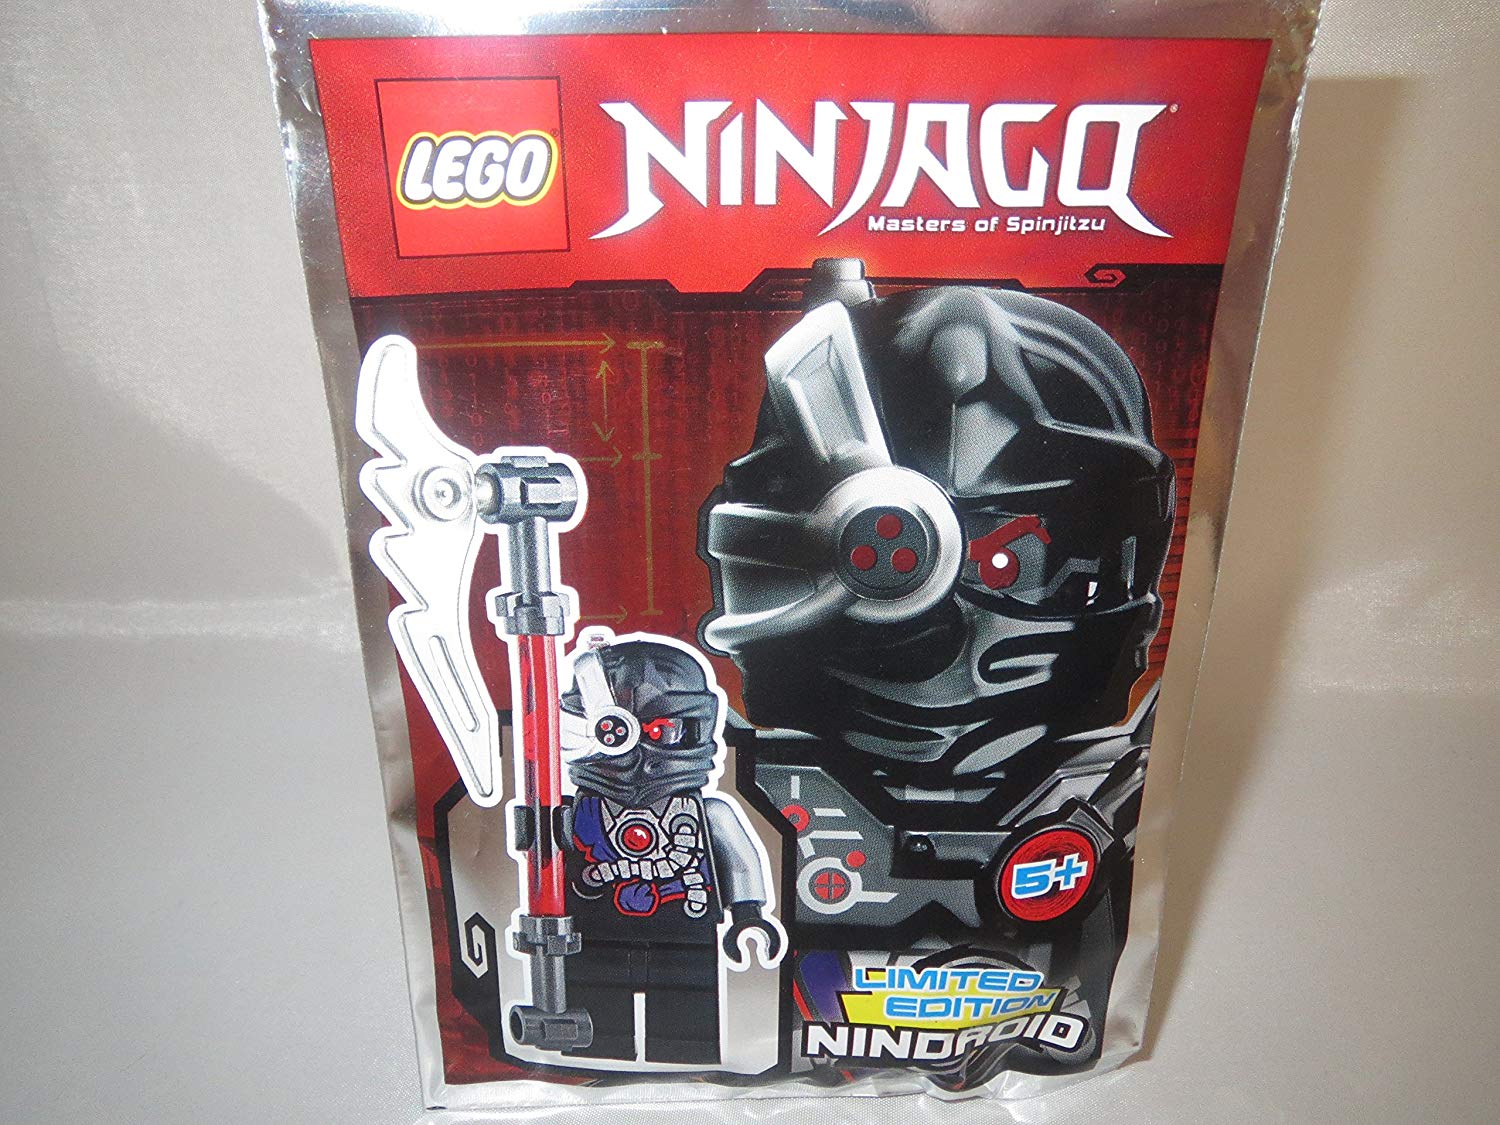 Blue Ocean Lego Ninjago – Nindroid With Mighty Techno/Sense – Limited Editi